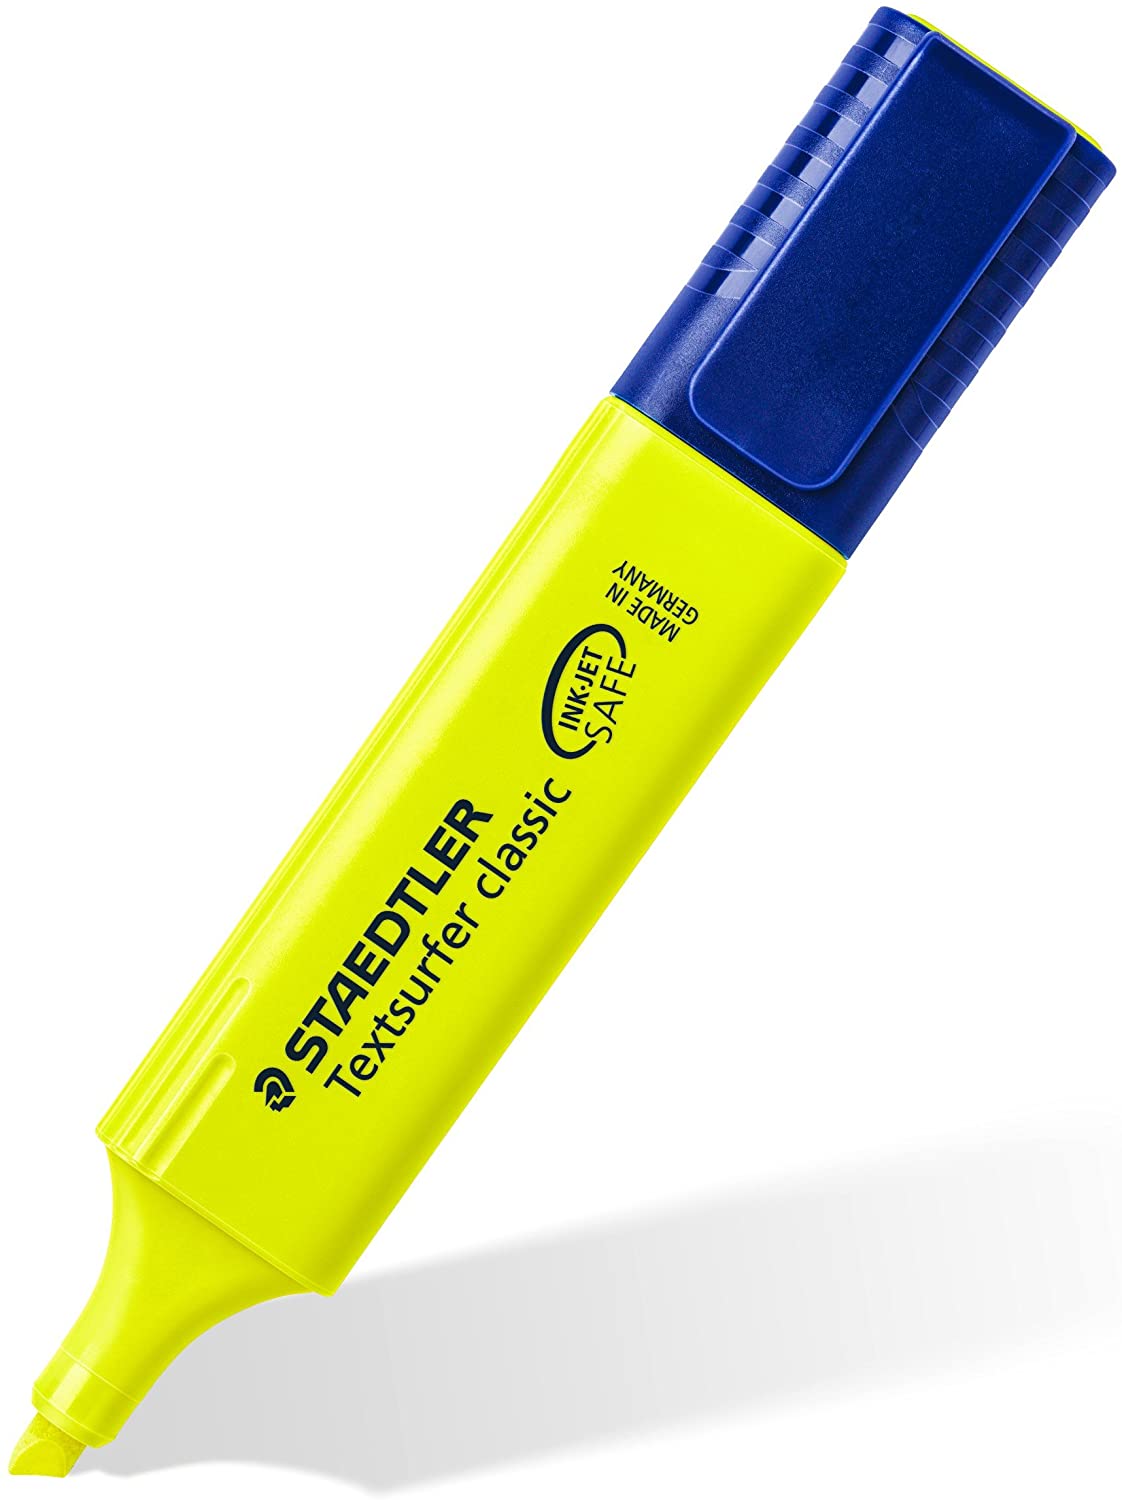 LOT de 10 Staedtler Textsurfer Classic 364 Fluorescent Marker Pen - Pointe biseautée - Couleur jaune